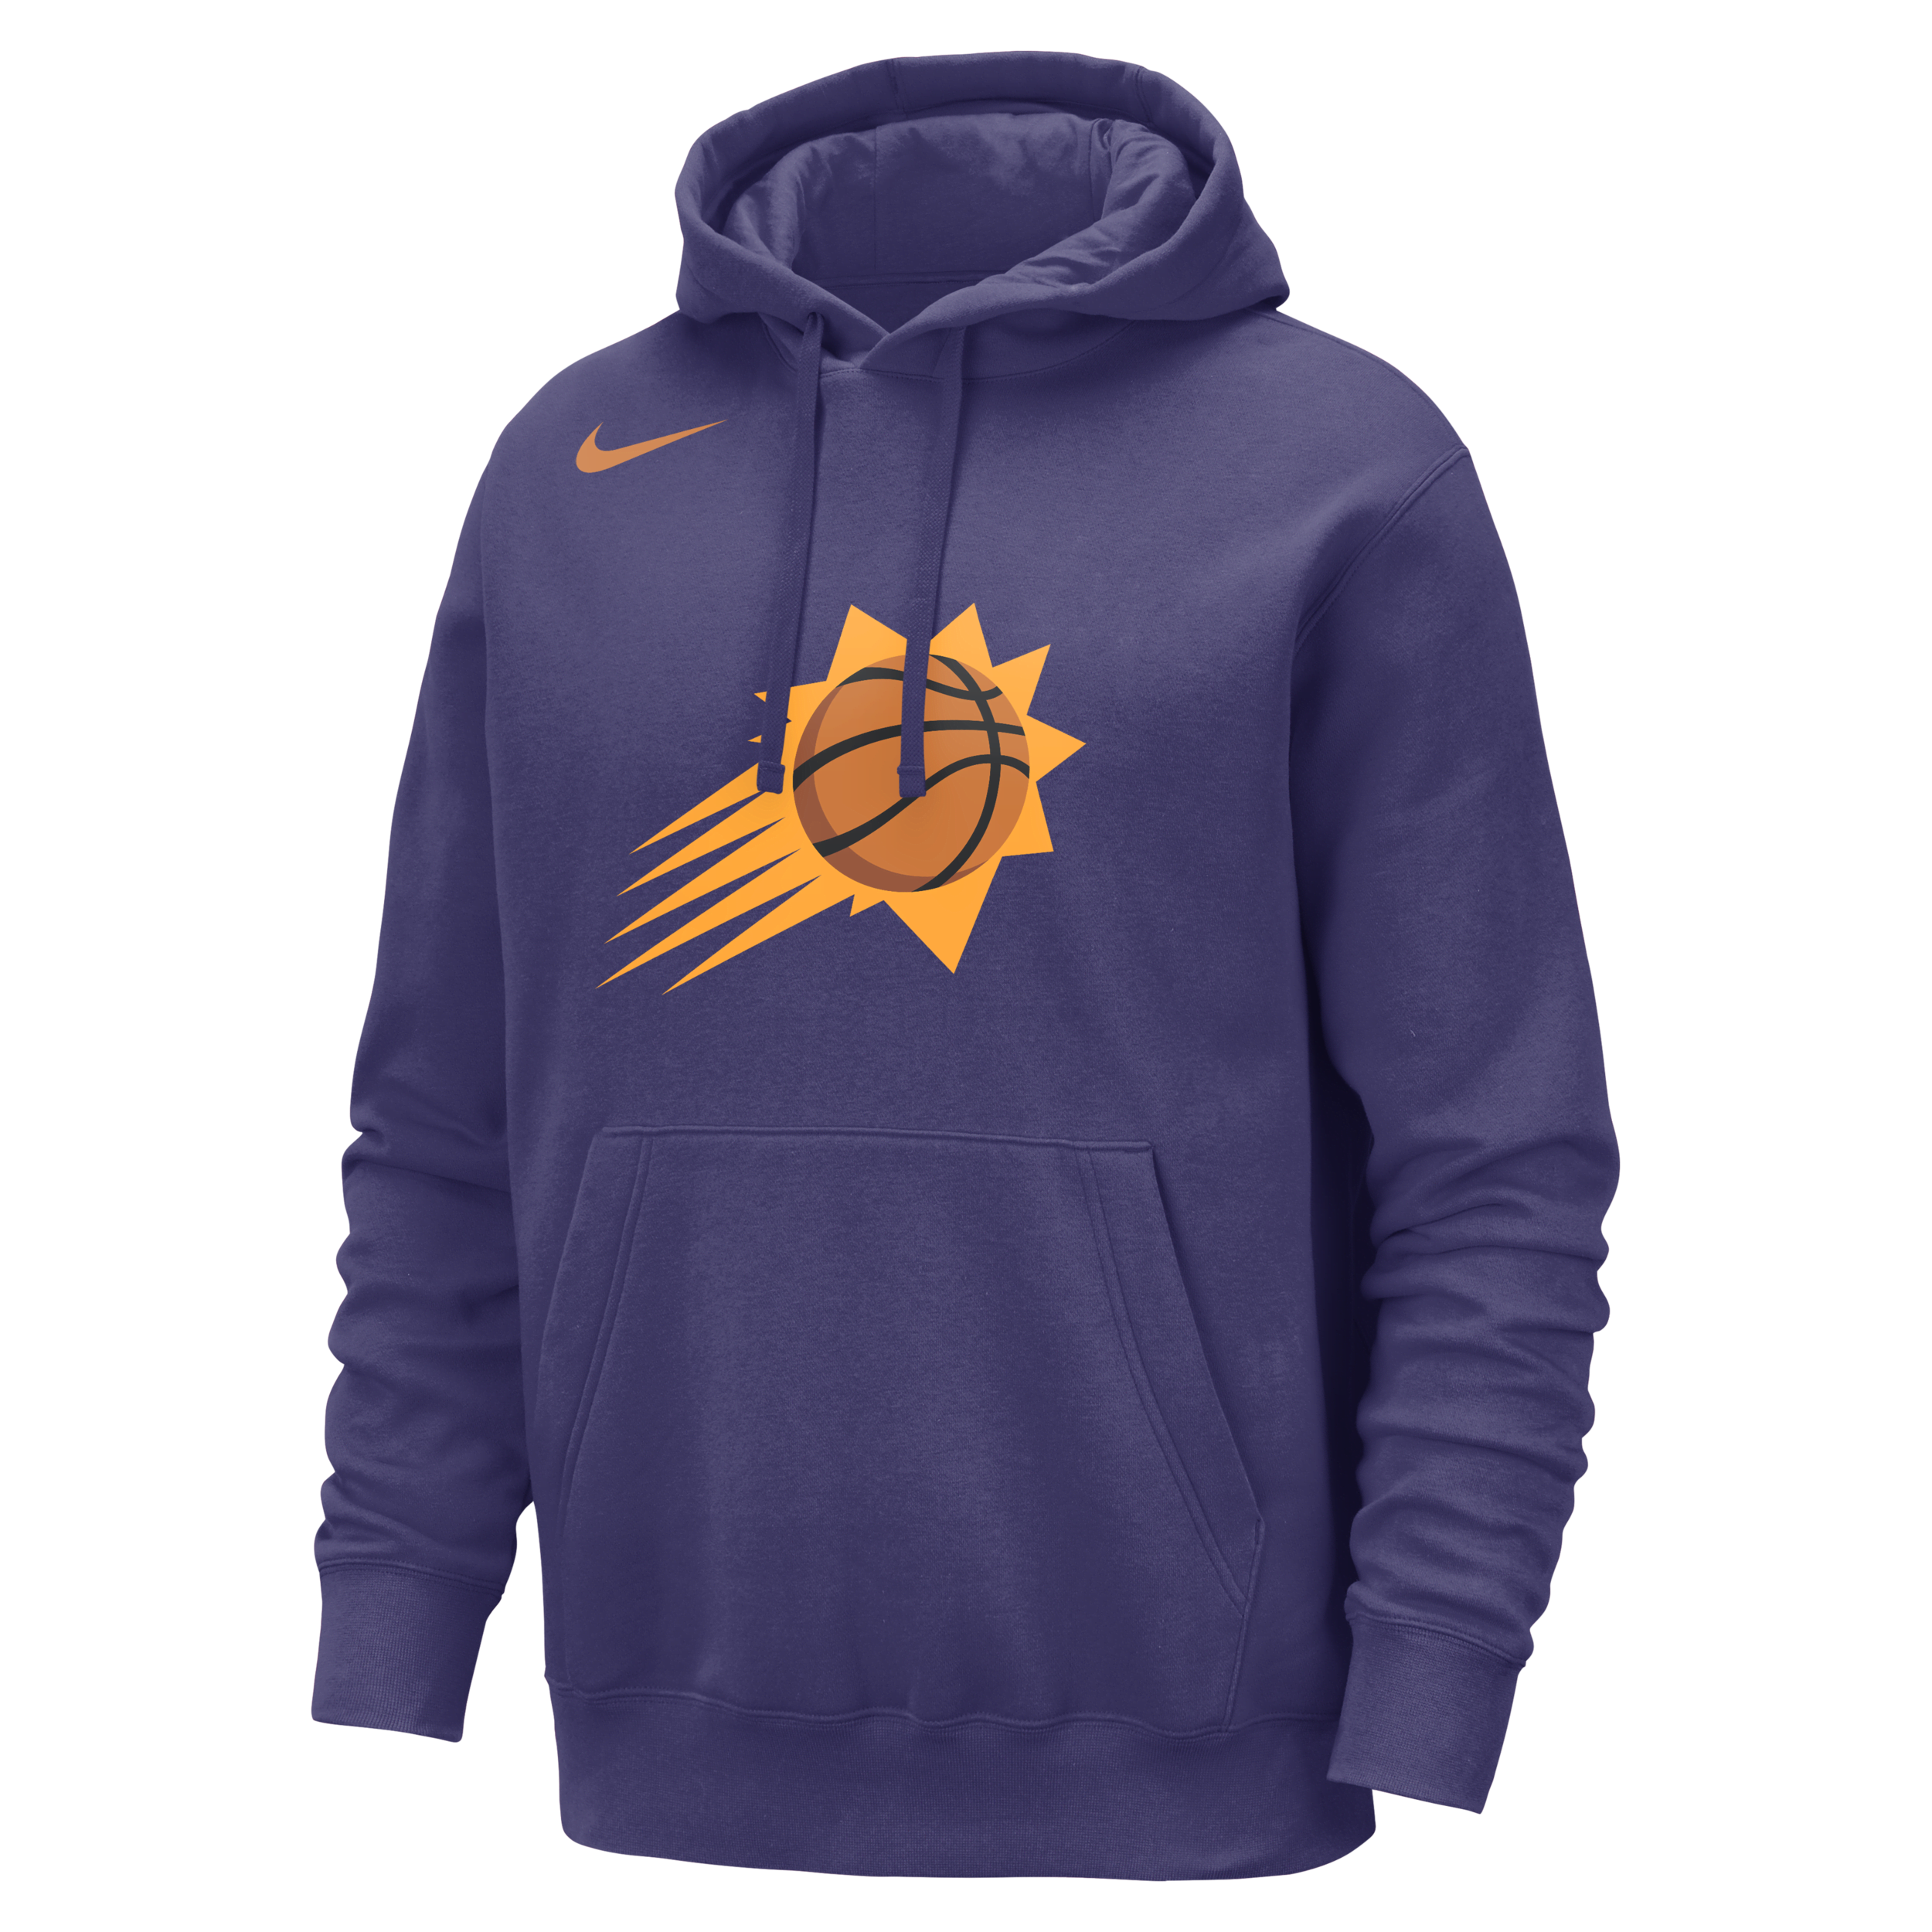 Felpa pullover in fleece con cappuccio Phoenix Suns Club Nike NBA – Uomo - Viola